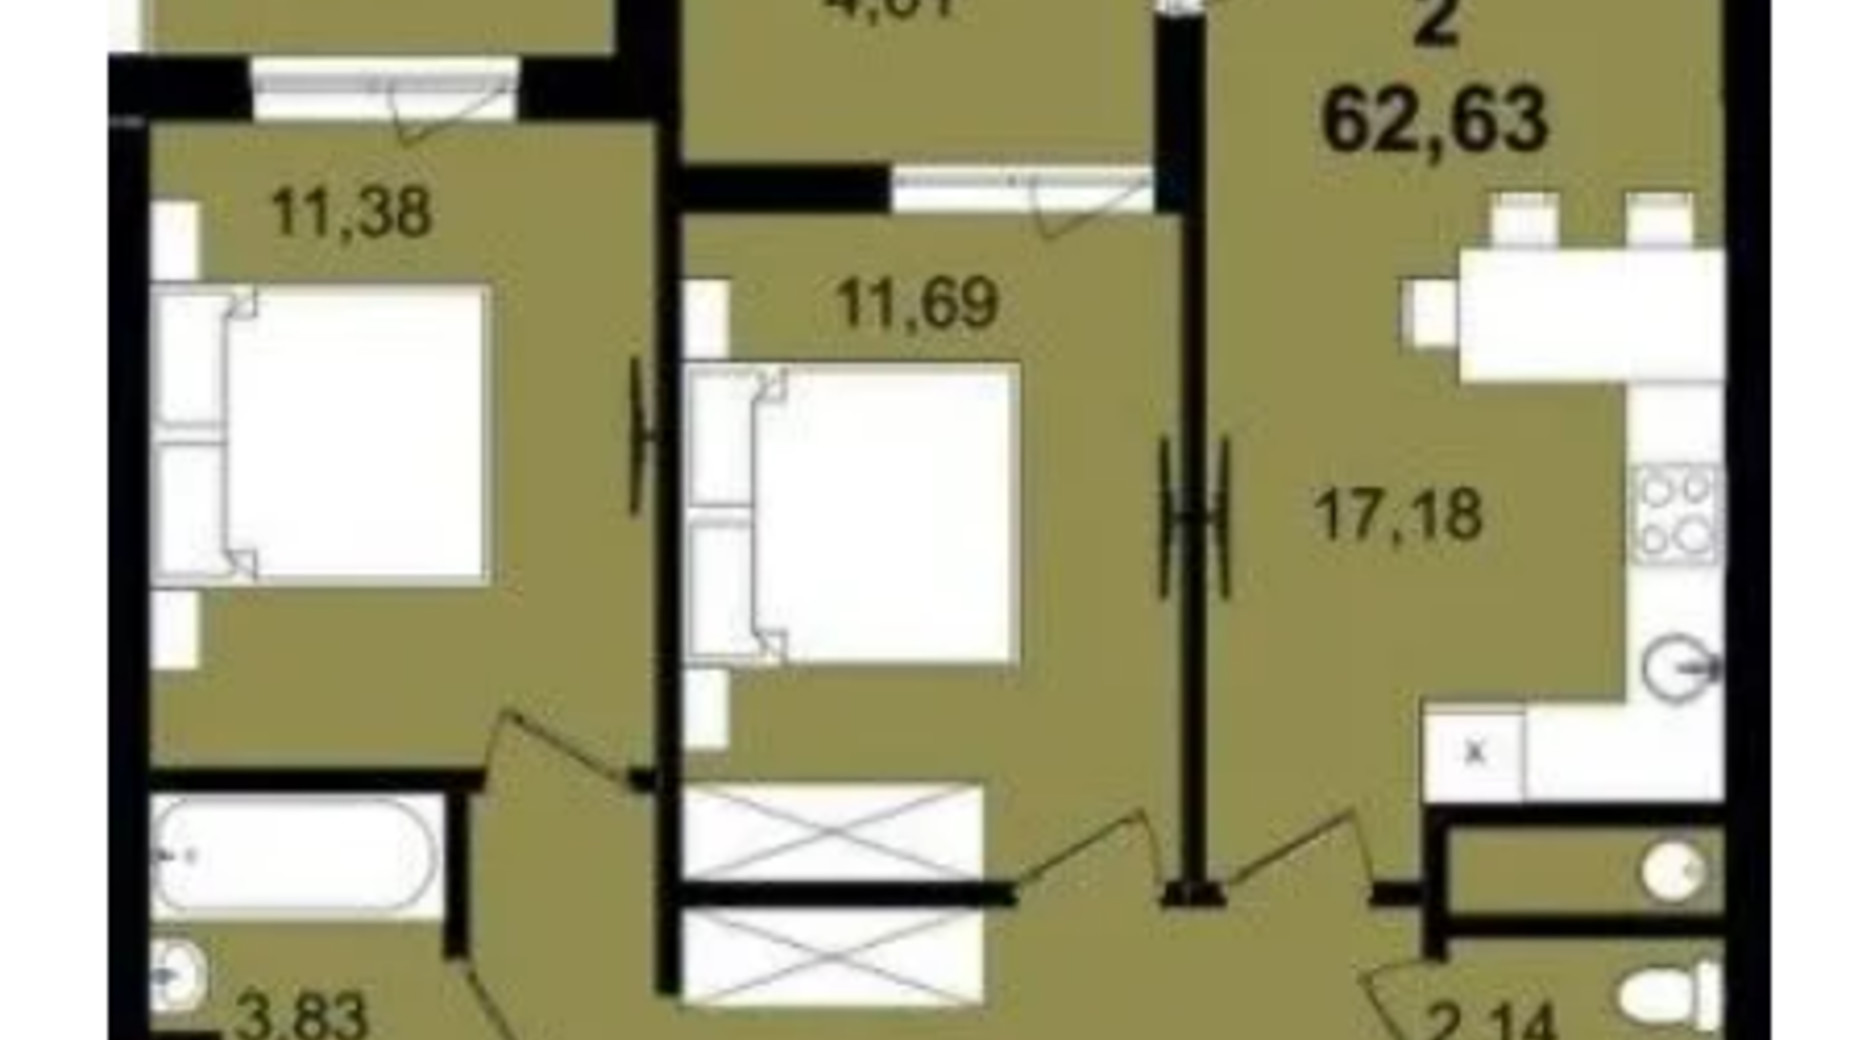 Планировка 2-комнатной квартиры в ЖК Infinity Park 62.63 м², фото 630785